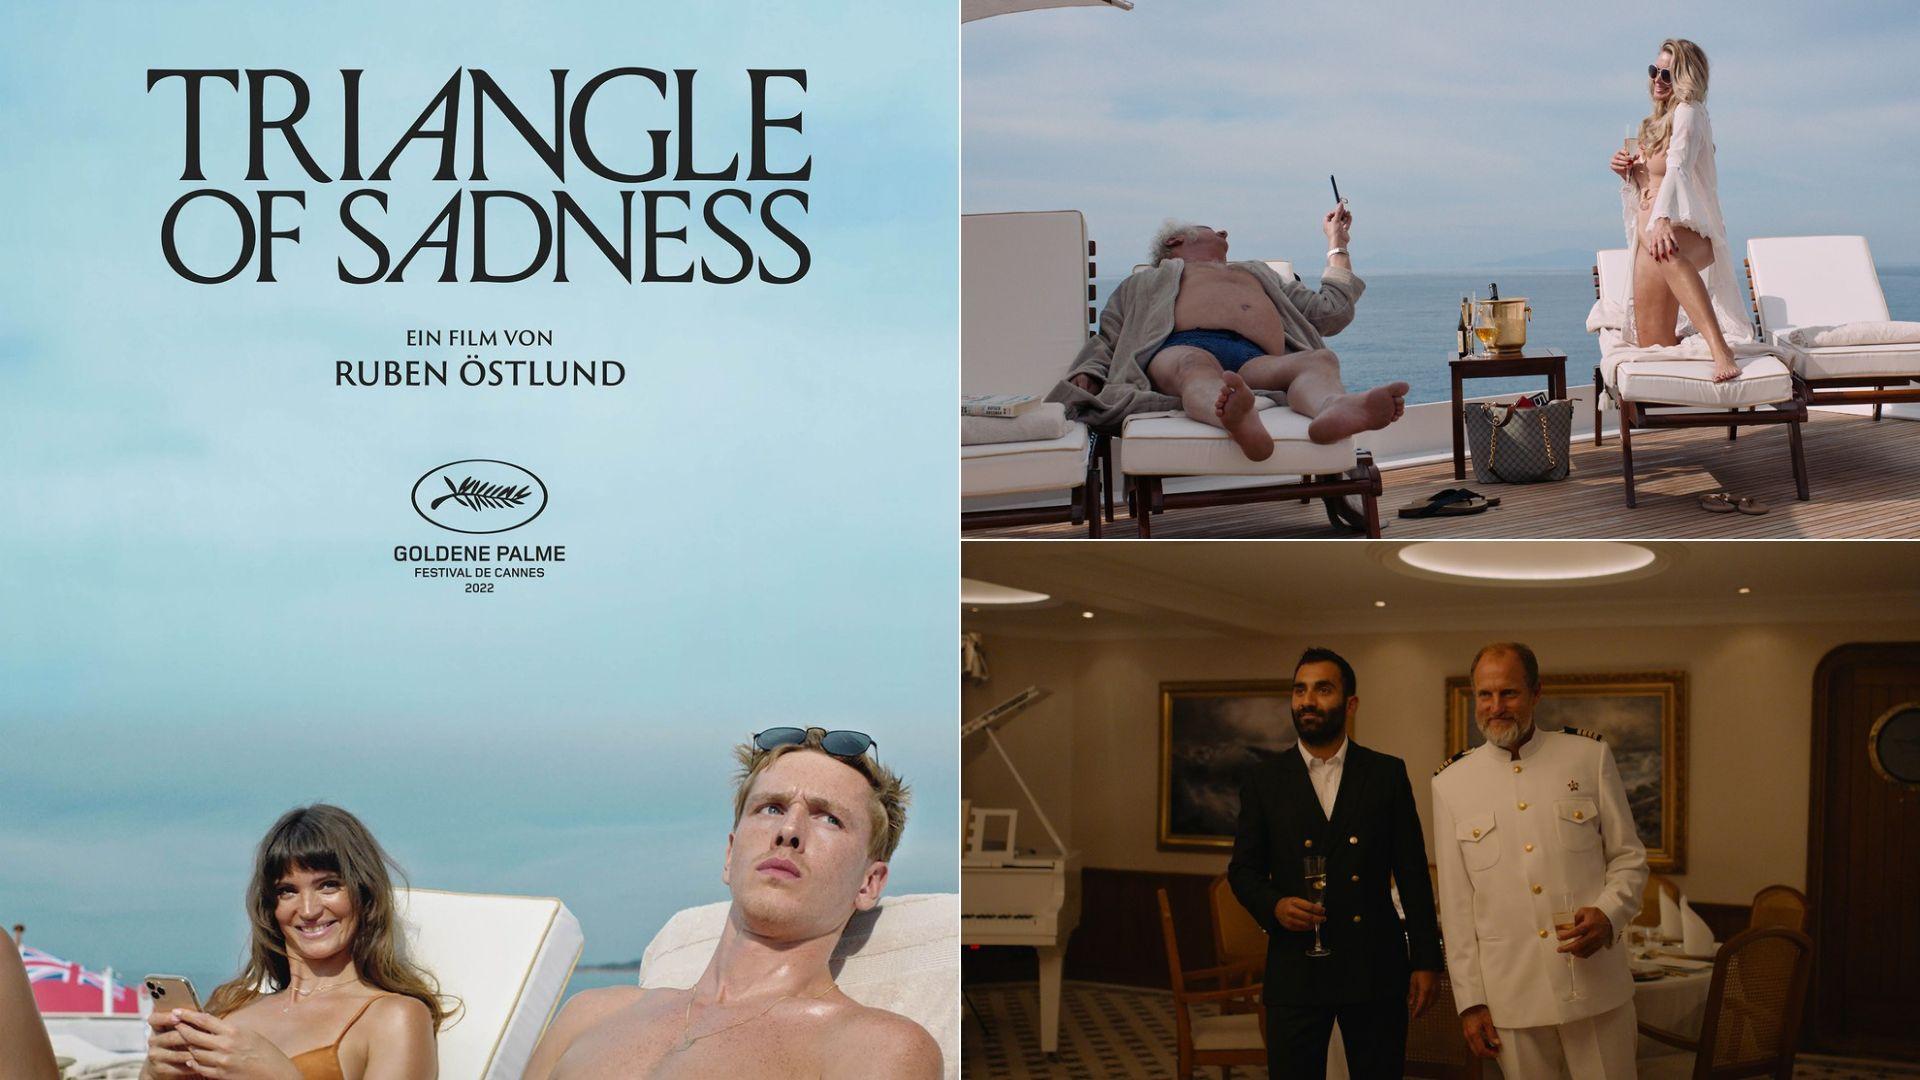 Filmul "Triangle of sadness", o satiră despre societatea zilelor noastre, disponibil pe AntenaPLAY. A câștigat premiul Palme d’Or